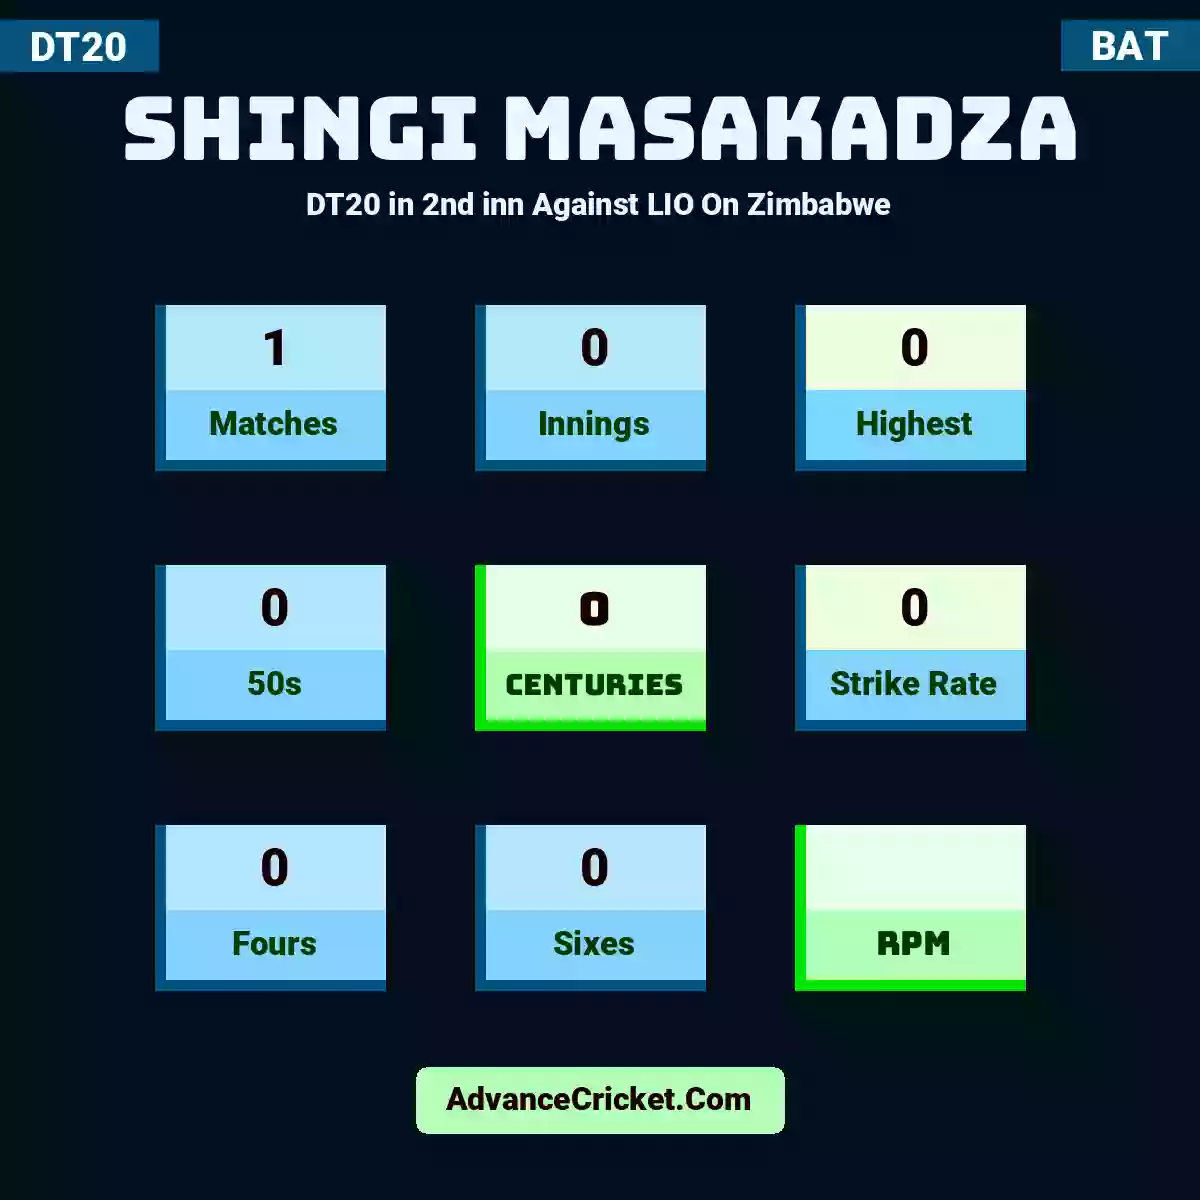 Shingi Masakadza DT20  in 2nd inn Against LIO On Zimbabwe, Shingi Masakadza played 1 matches, scored 0 runs as highest, 0 half-centuries, and 0 centuries, with a strike rate of 0. S.Masakadza hit 0 fours and 0 sixes.